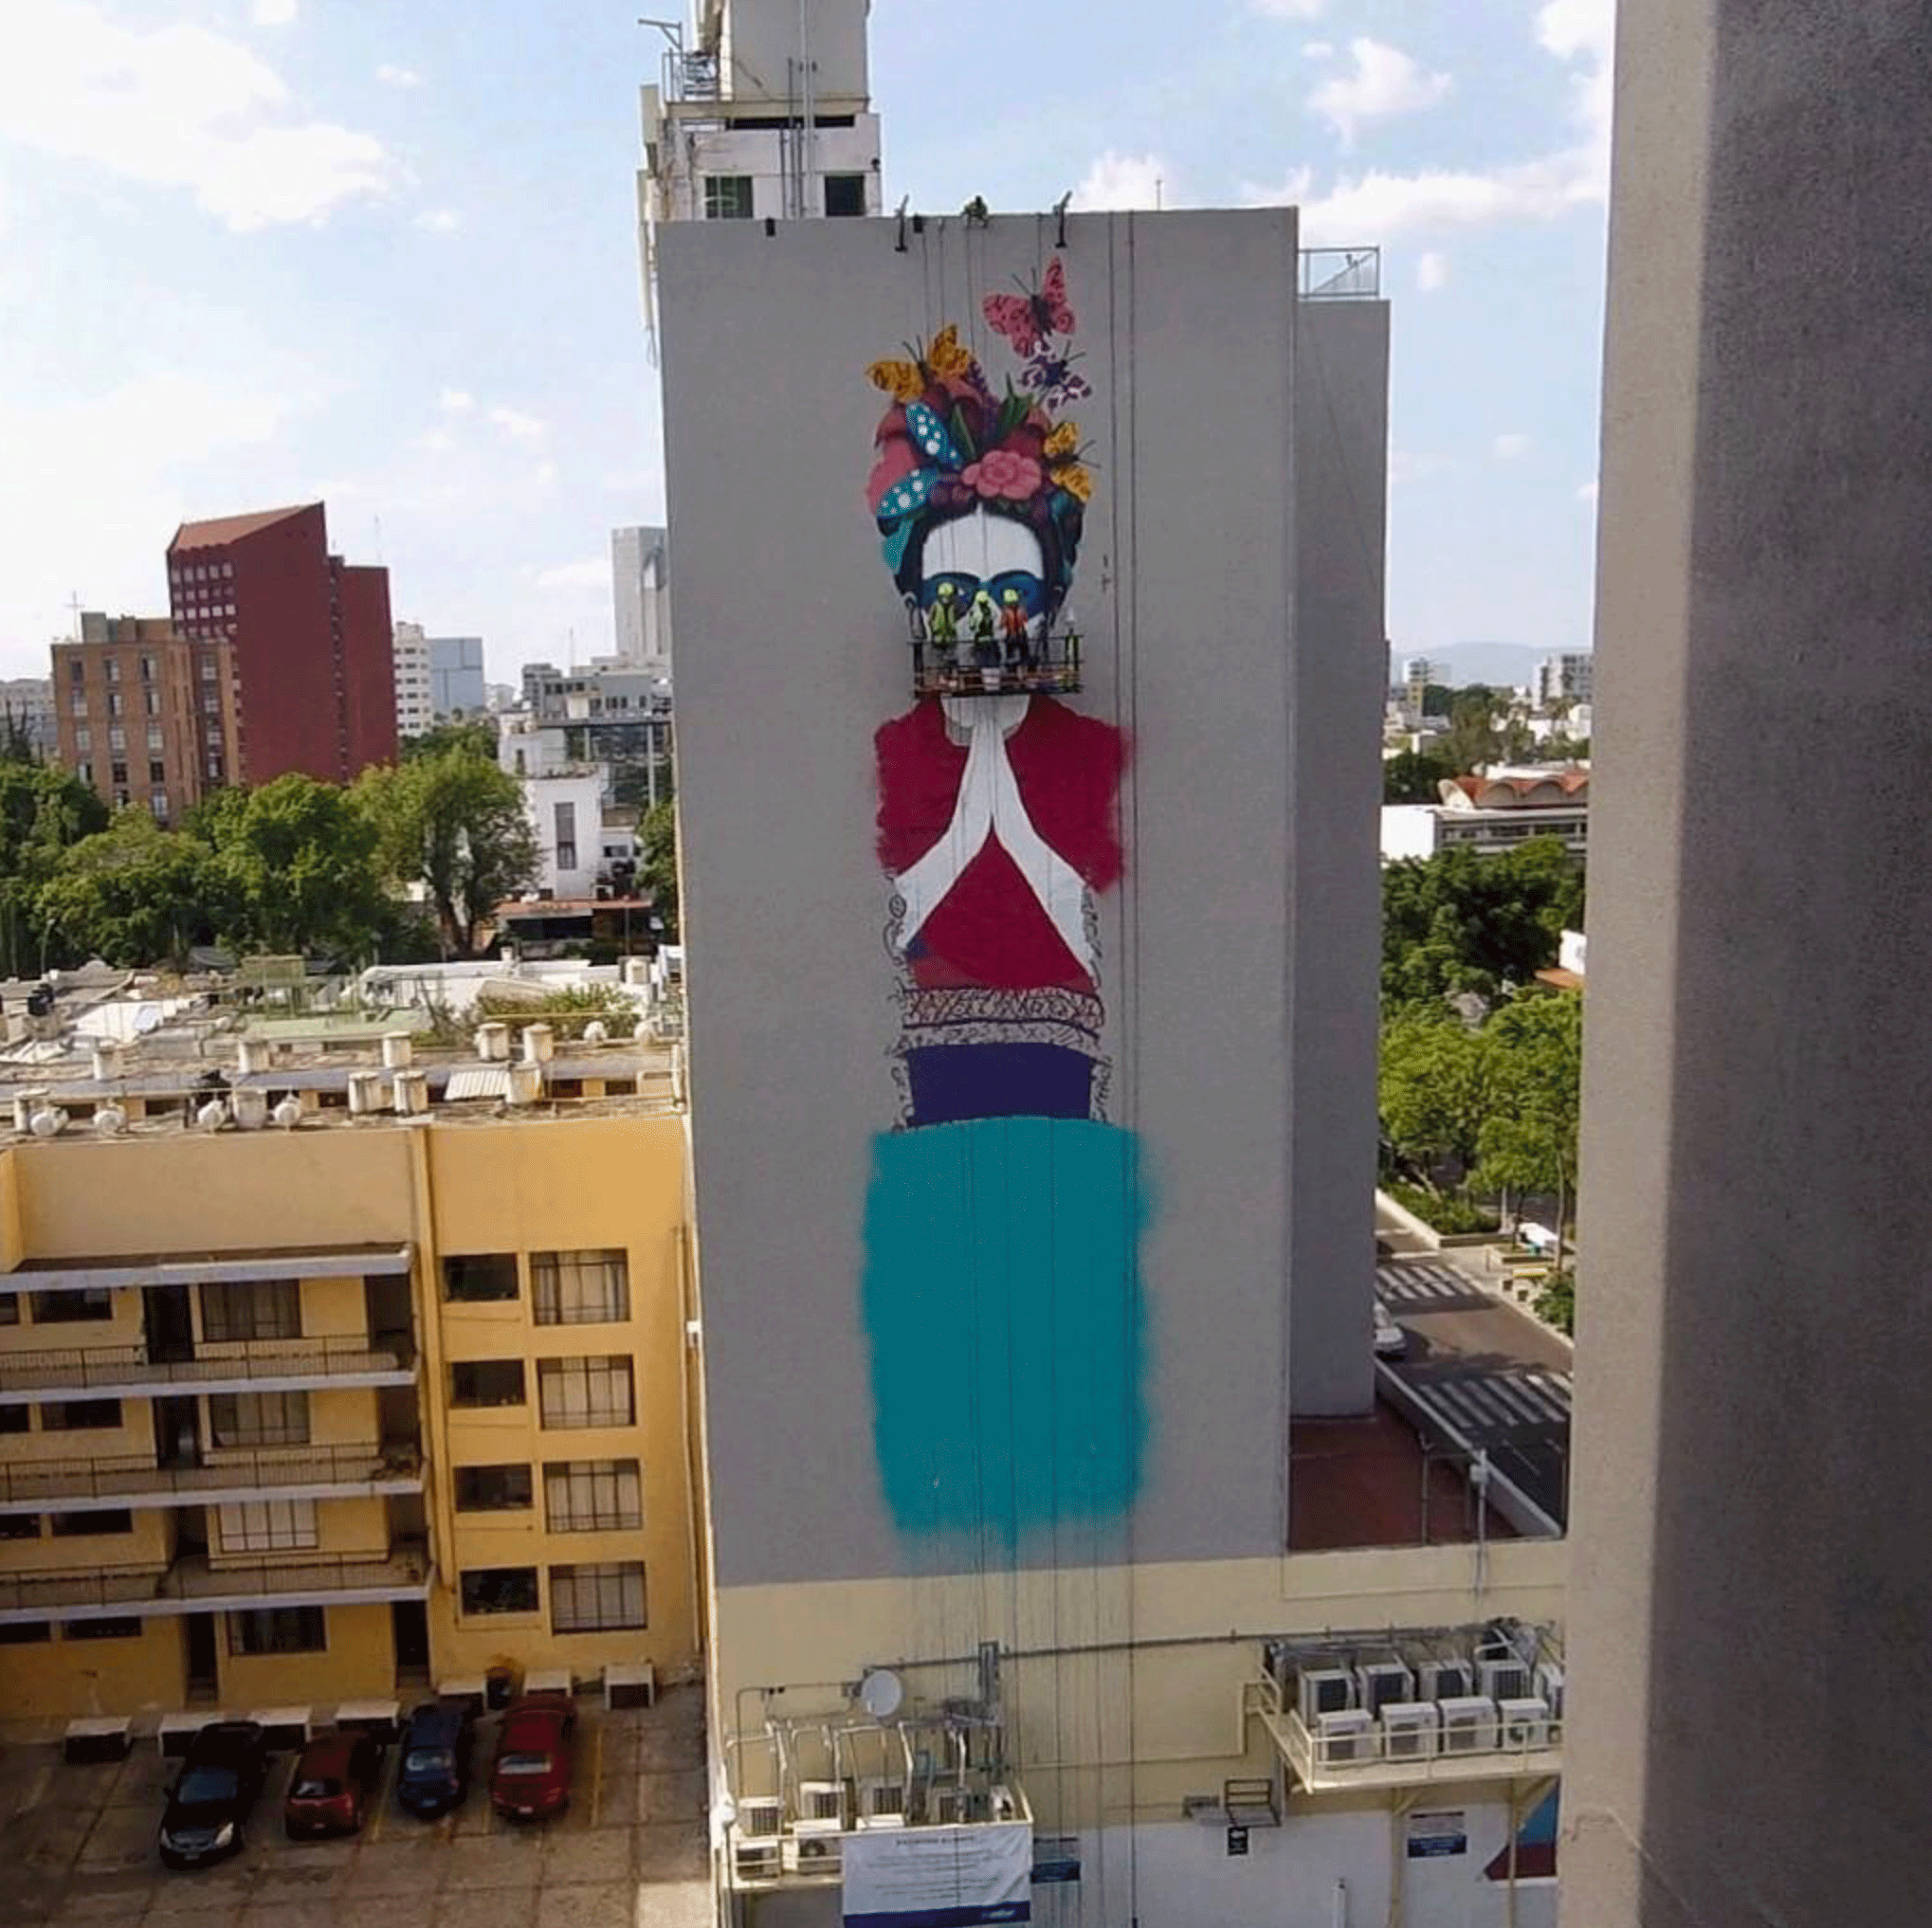 Fin Dac Frida Kahlo Mural